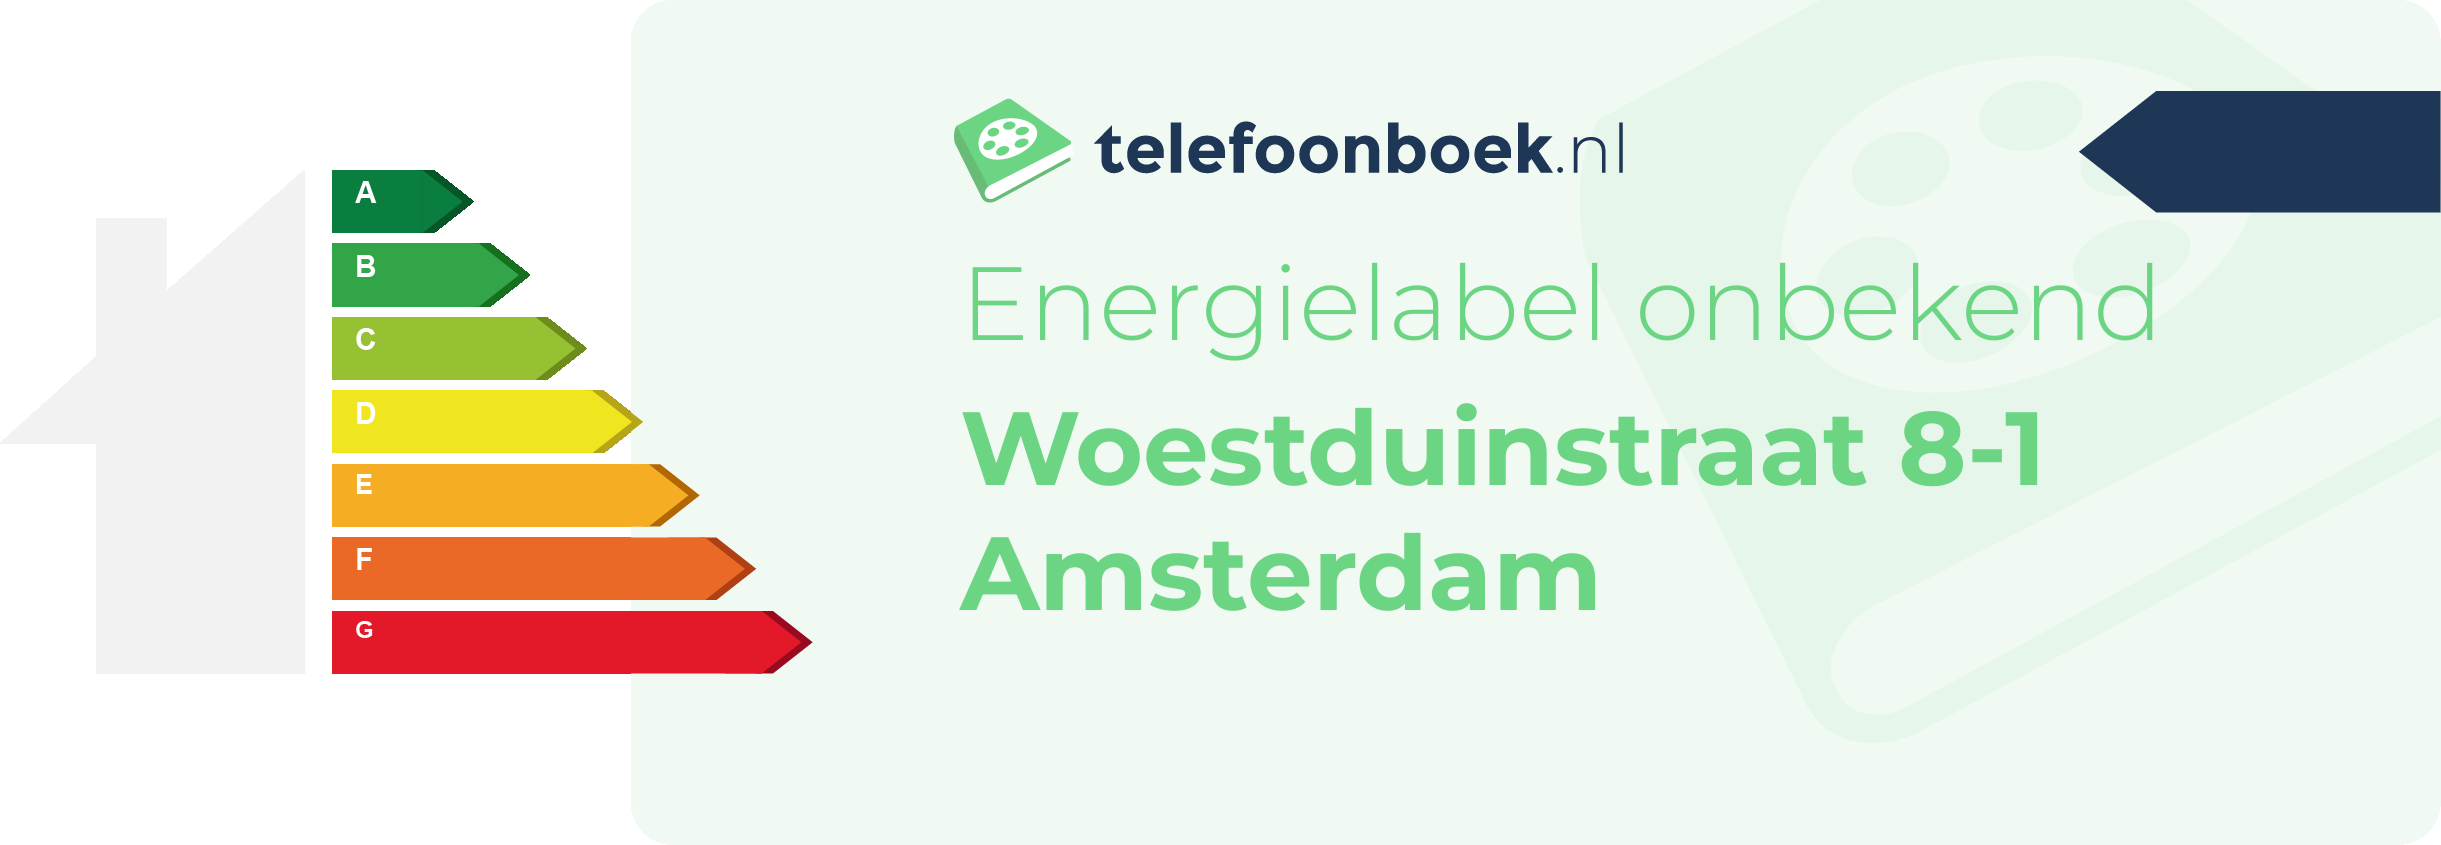 Energielabel Woestduinstraat 8-1 Amsterdam